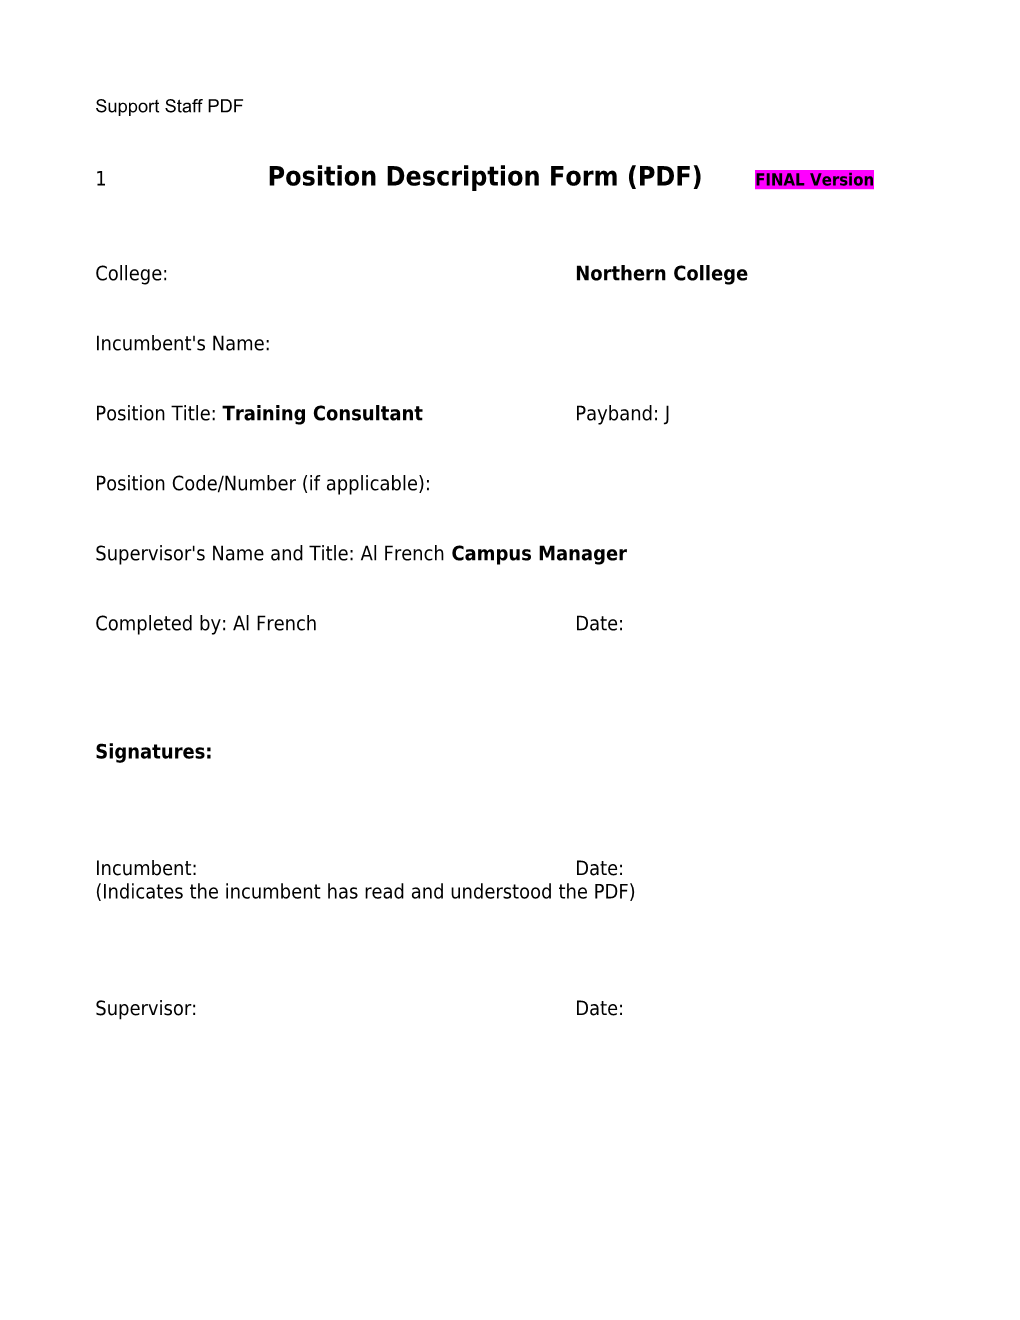 Position Description Form (PDF)FINAL Version